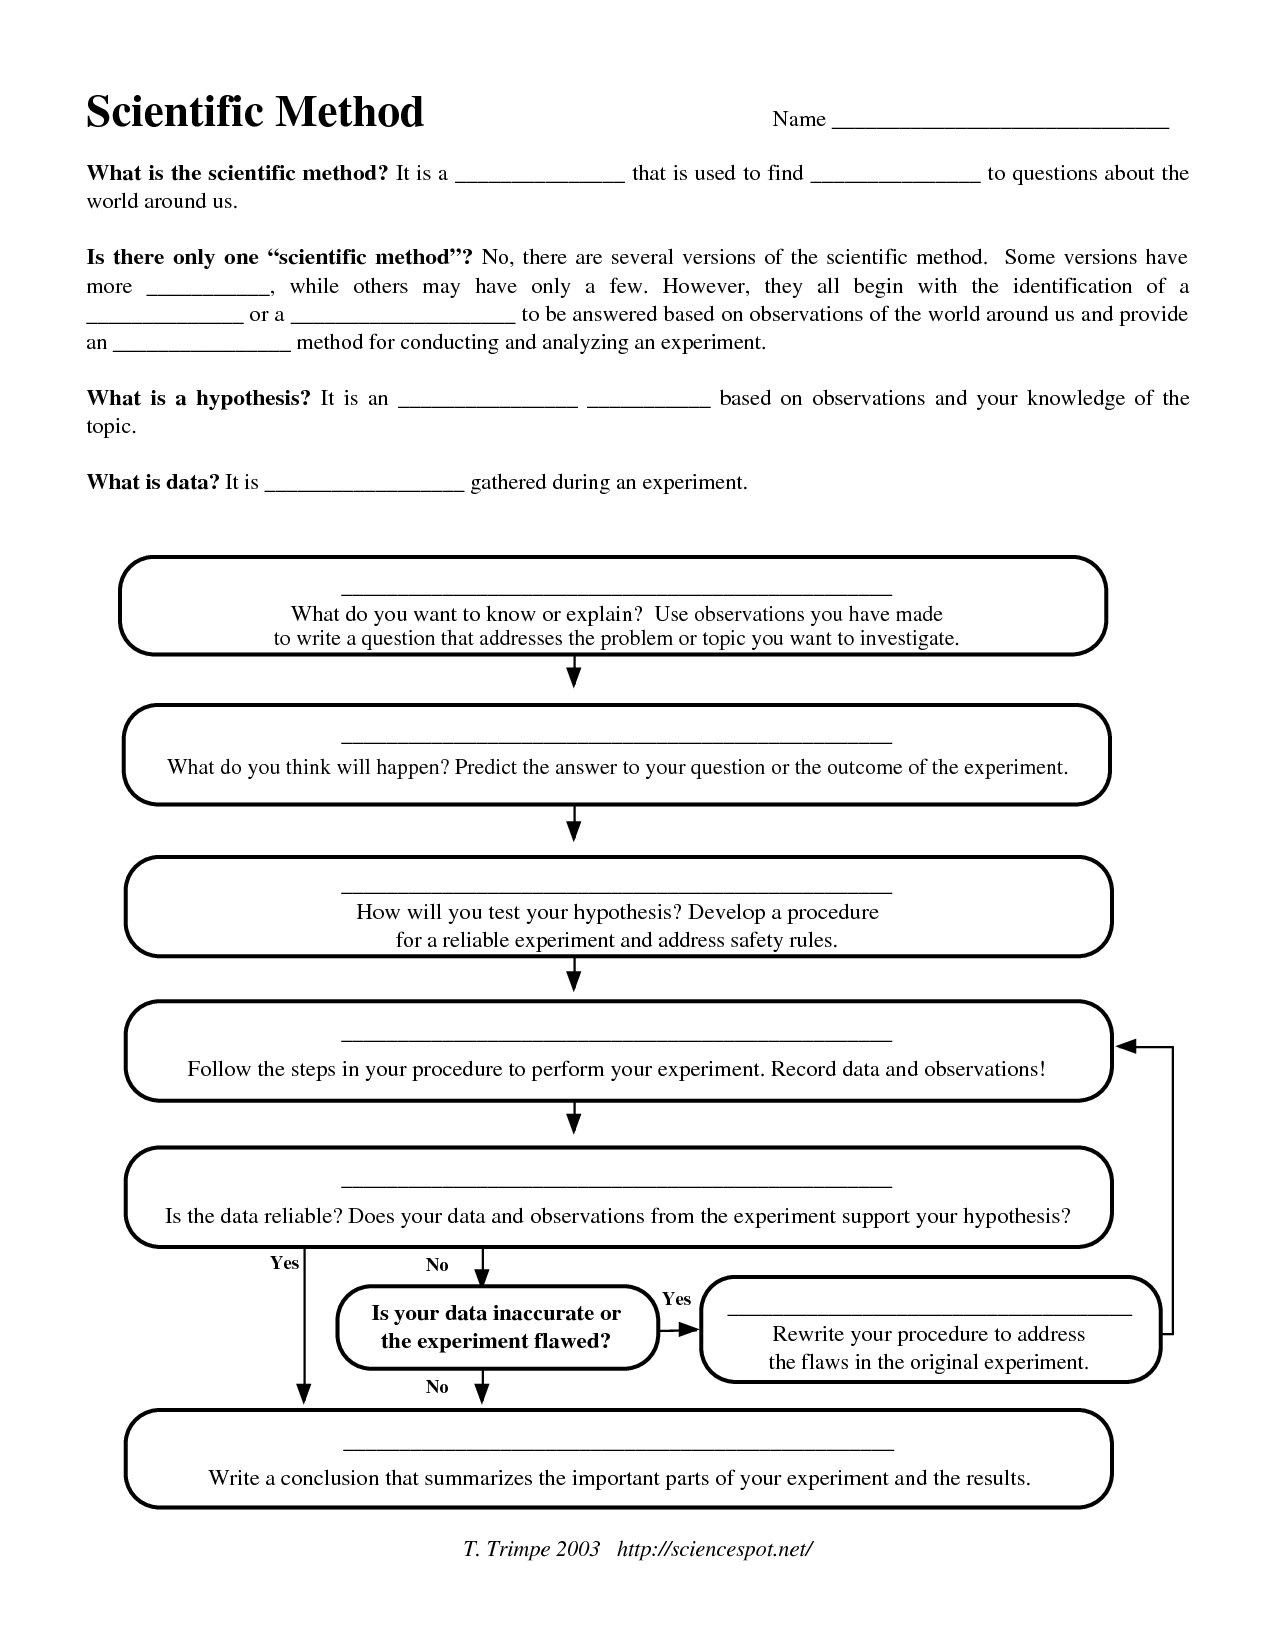 Scientific Method Worksheet High School  Yooob Along With Scientific Method Worksheet Answers